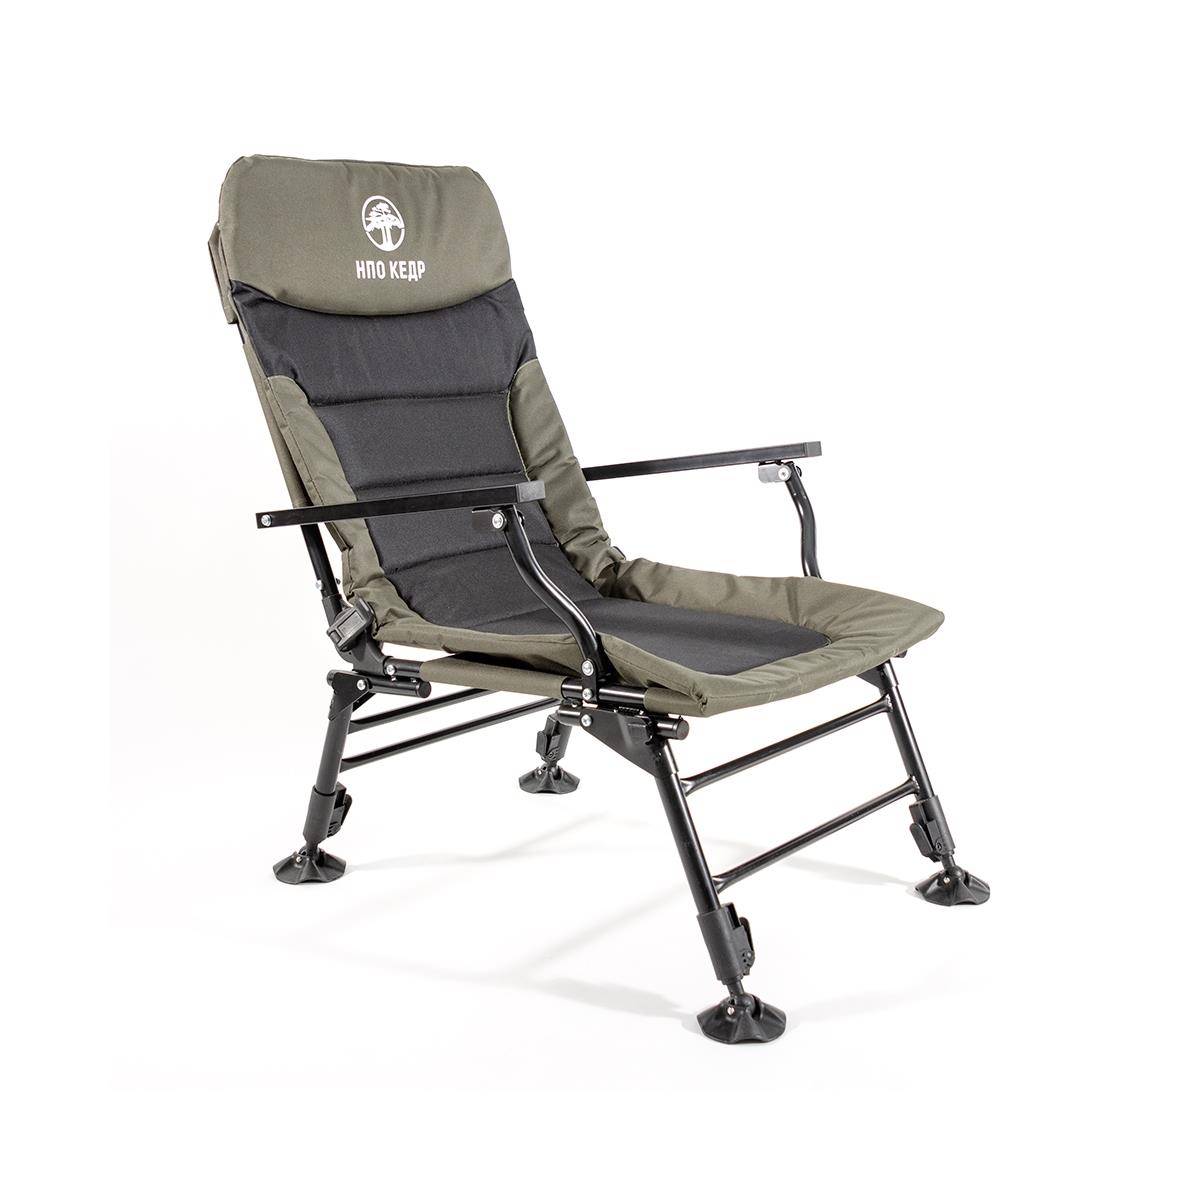 Кресло карповое с подлокотниками (SKC-01)  Кедр